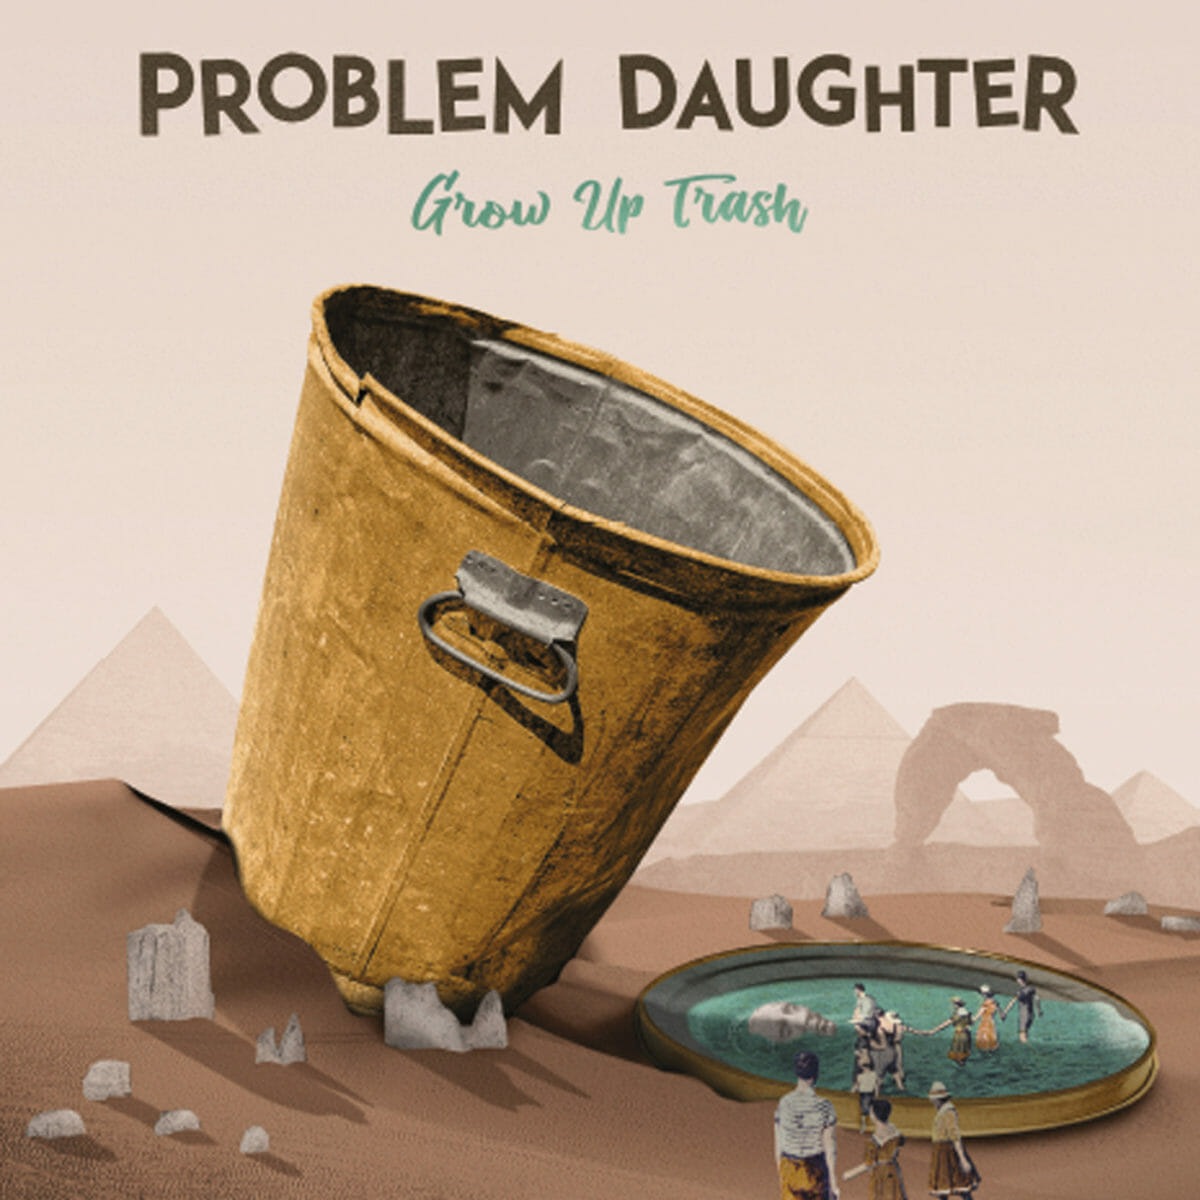 Problem Daughter artwork